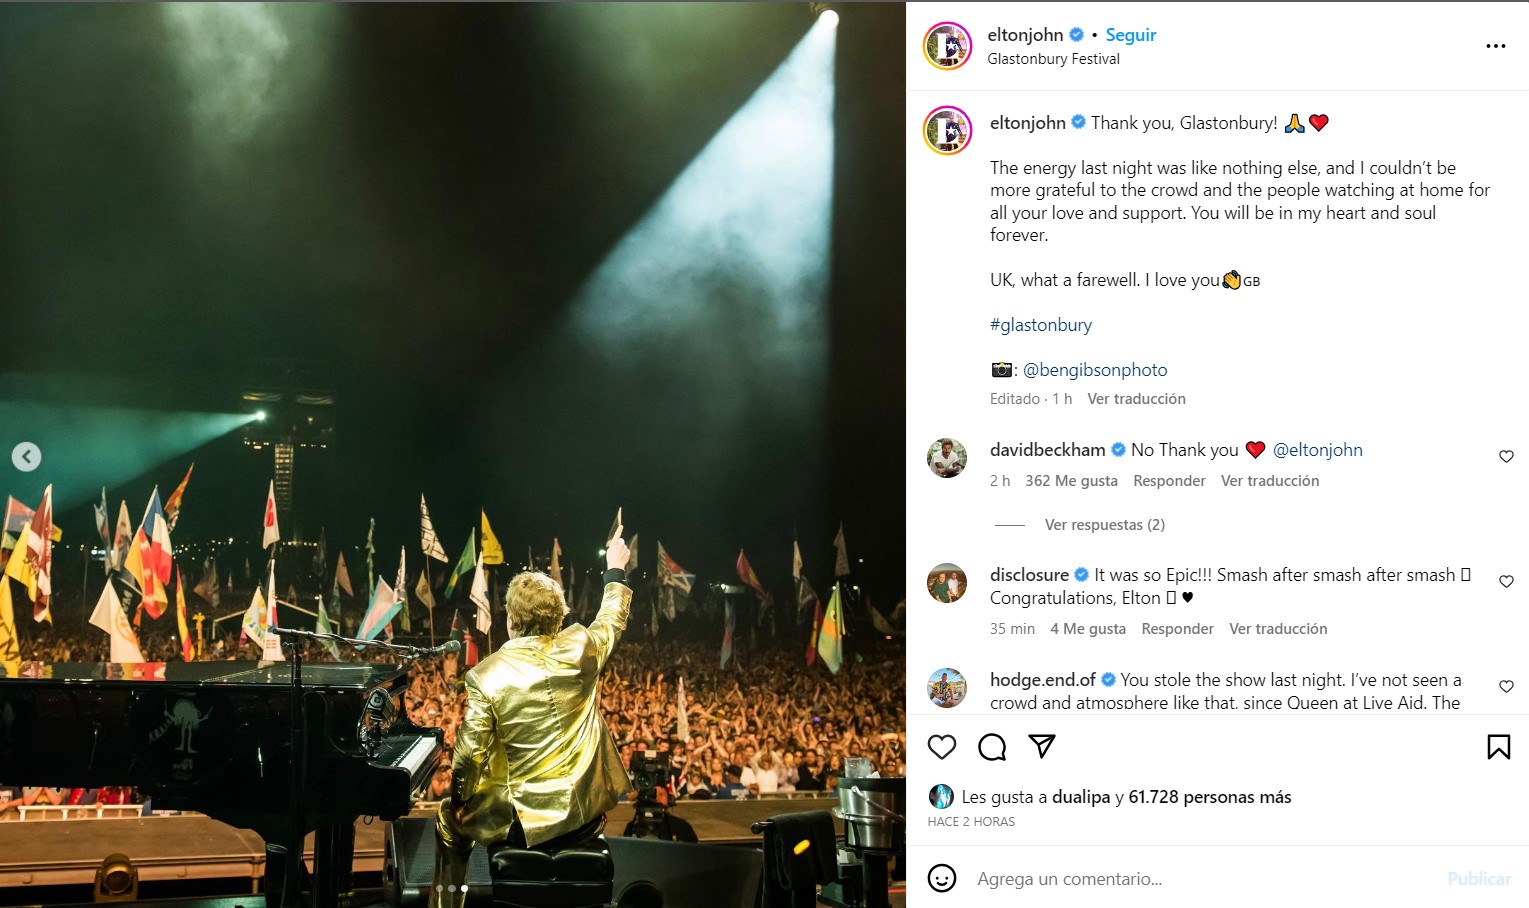 Elton John agradeció a sus fanáticos por la emotiva despedida que tuvo en el festival Glastonbury
Foto: Instagram/Elton John, BEN GIBSON PHOTO